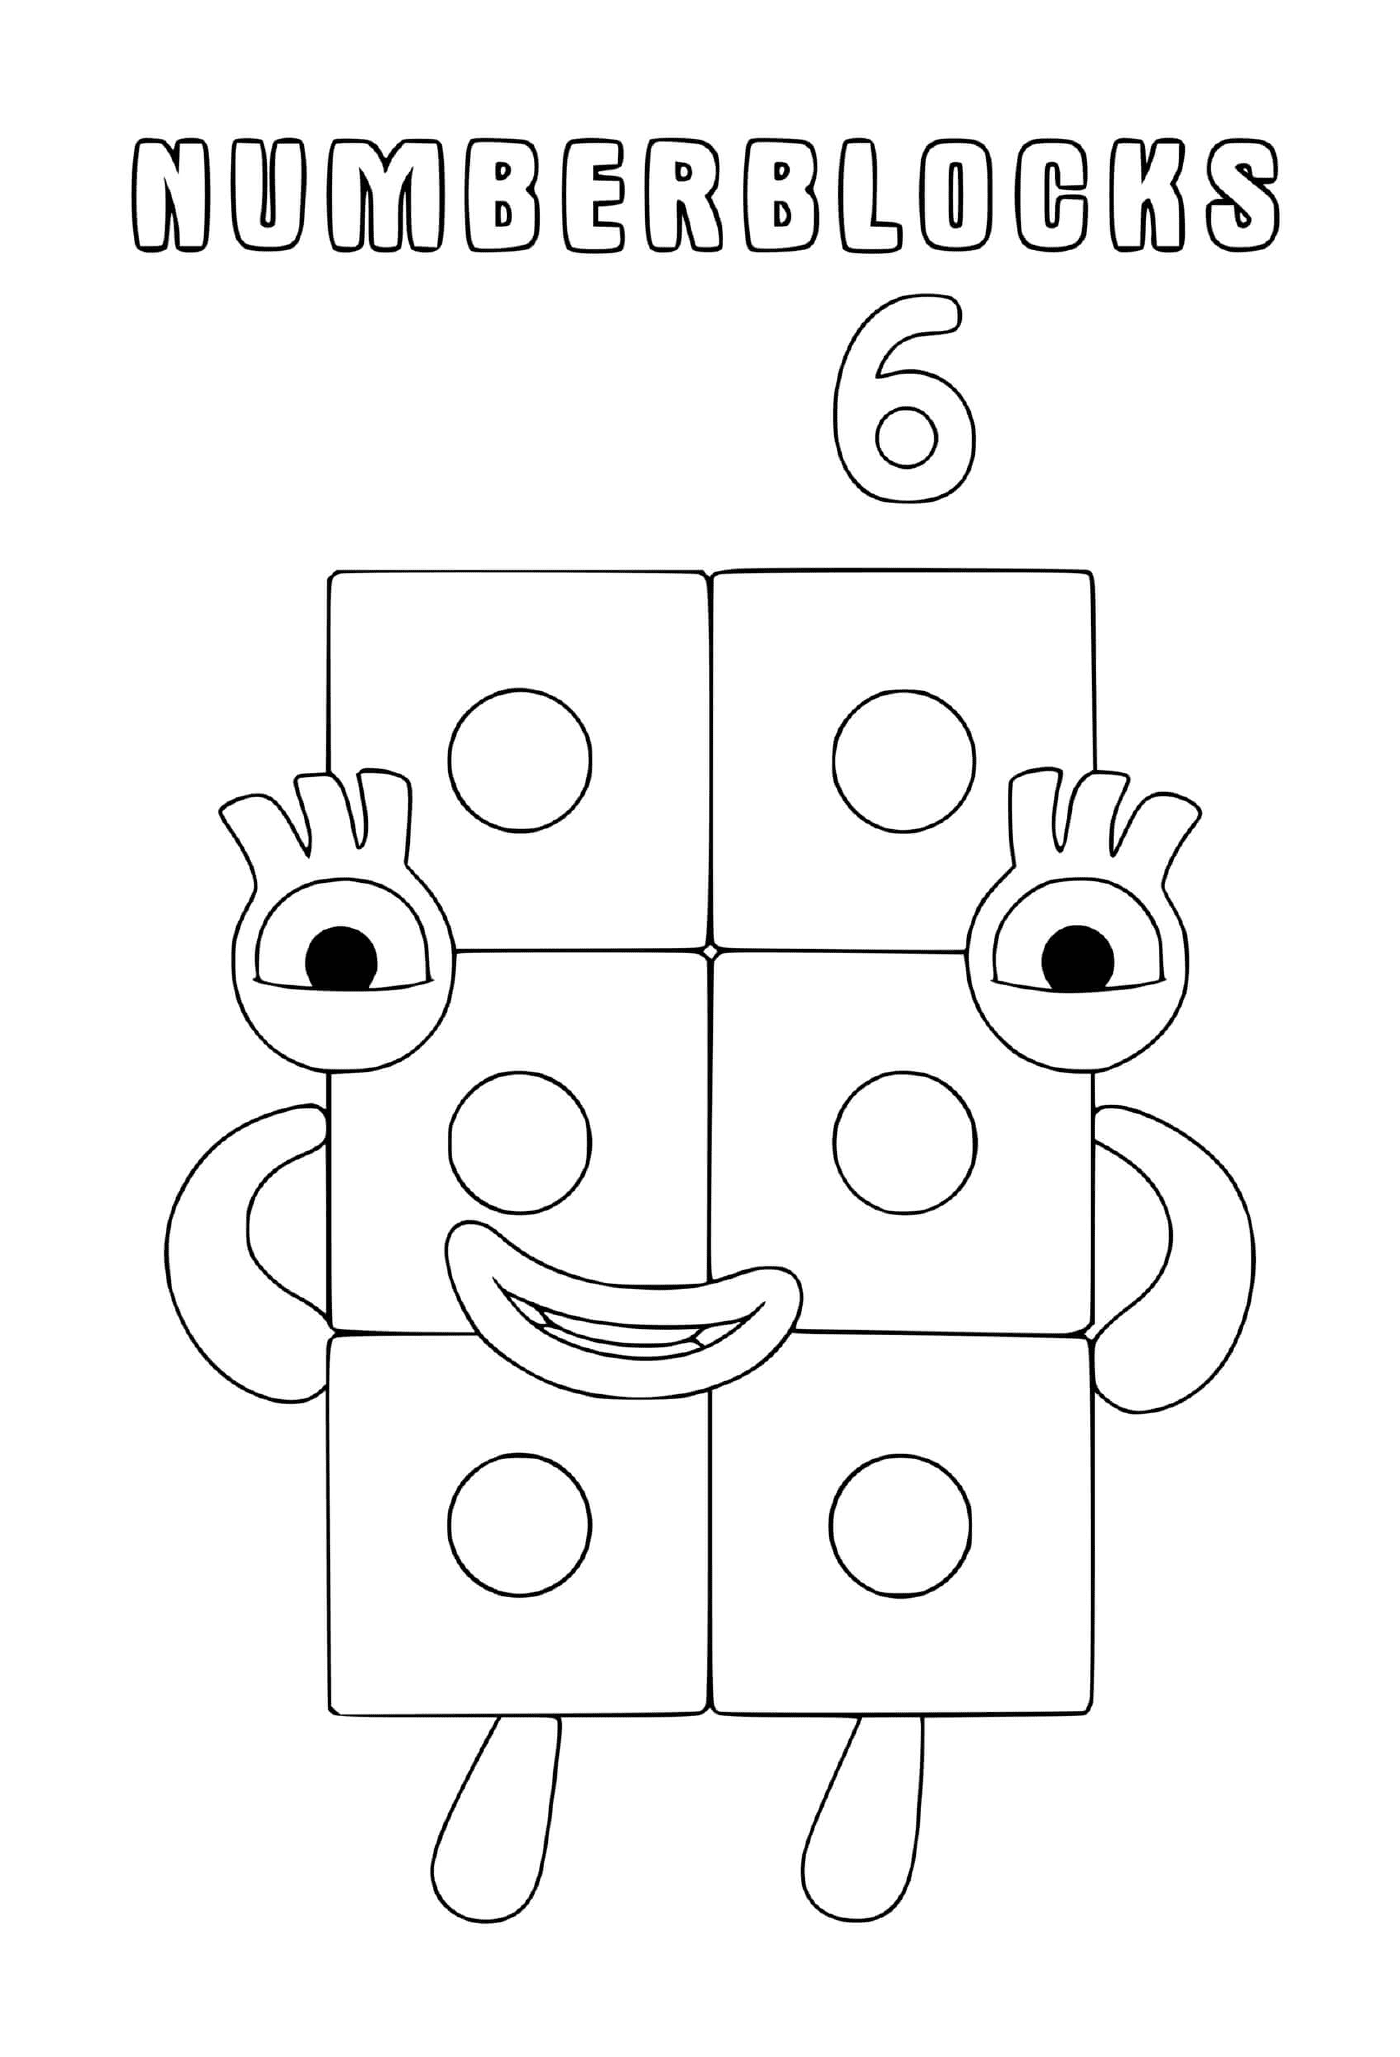  Numberblocks número 6, un bloque con ojos 